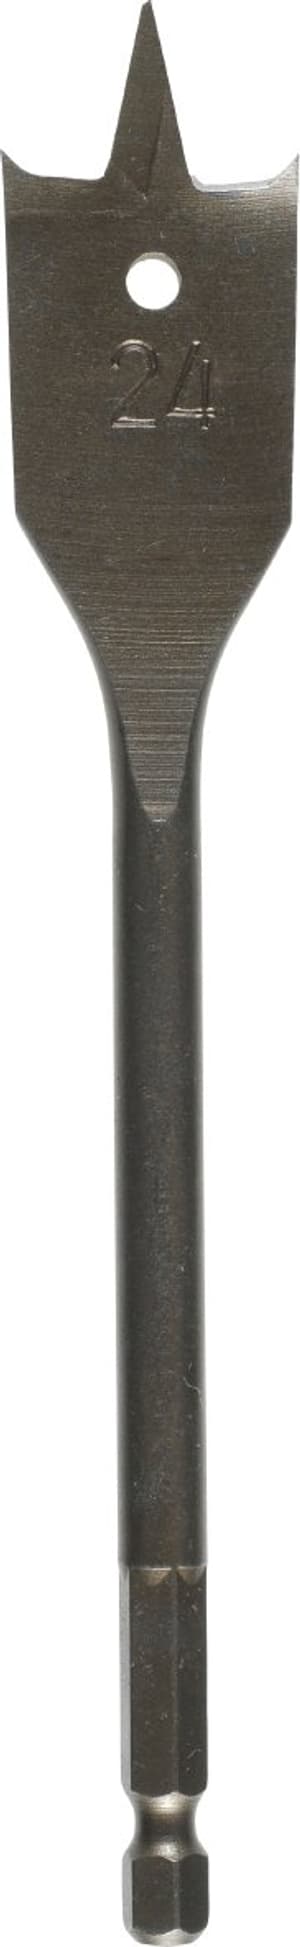 Flachfräsbohrer, ø 28 mm